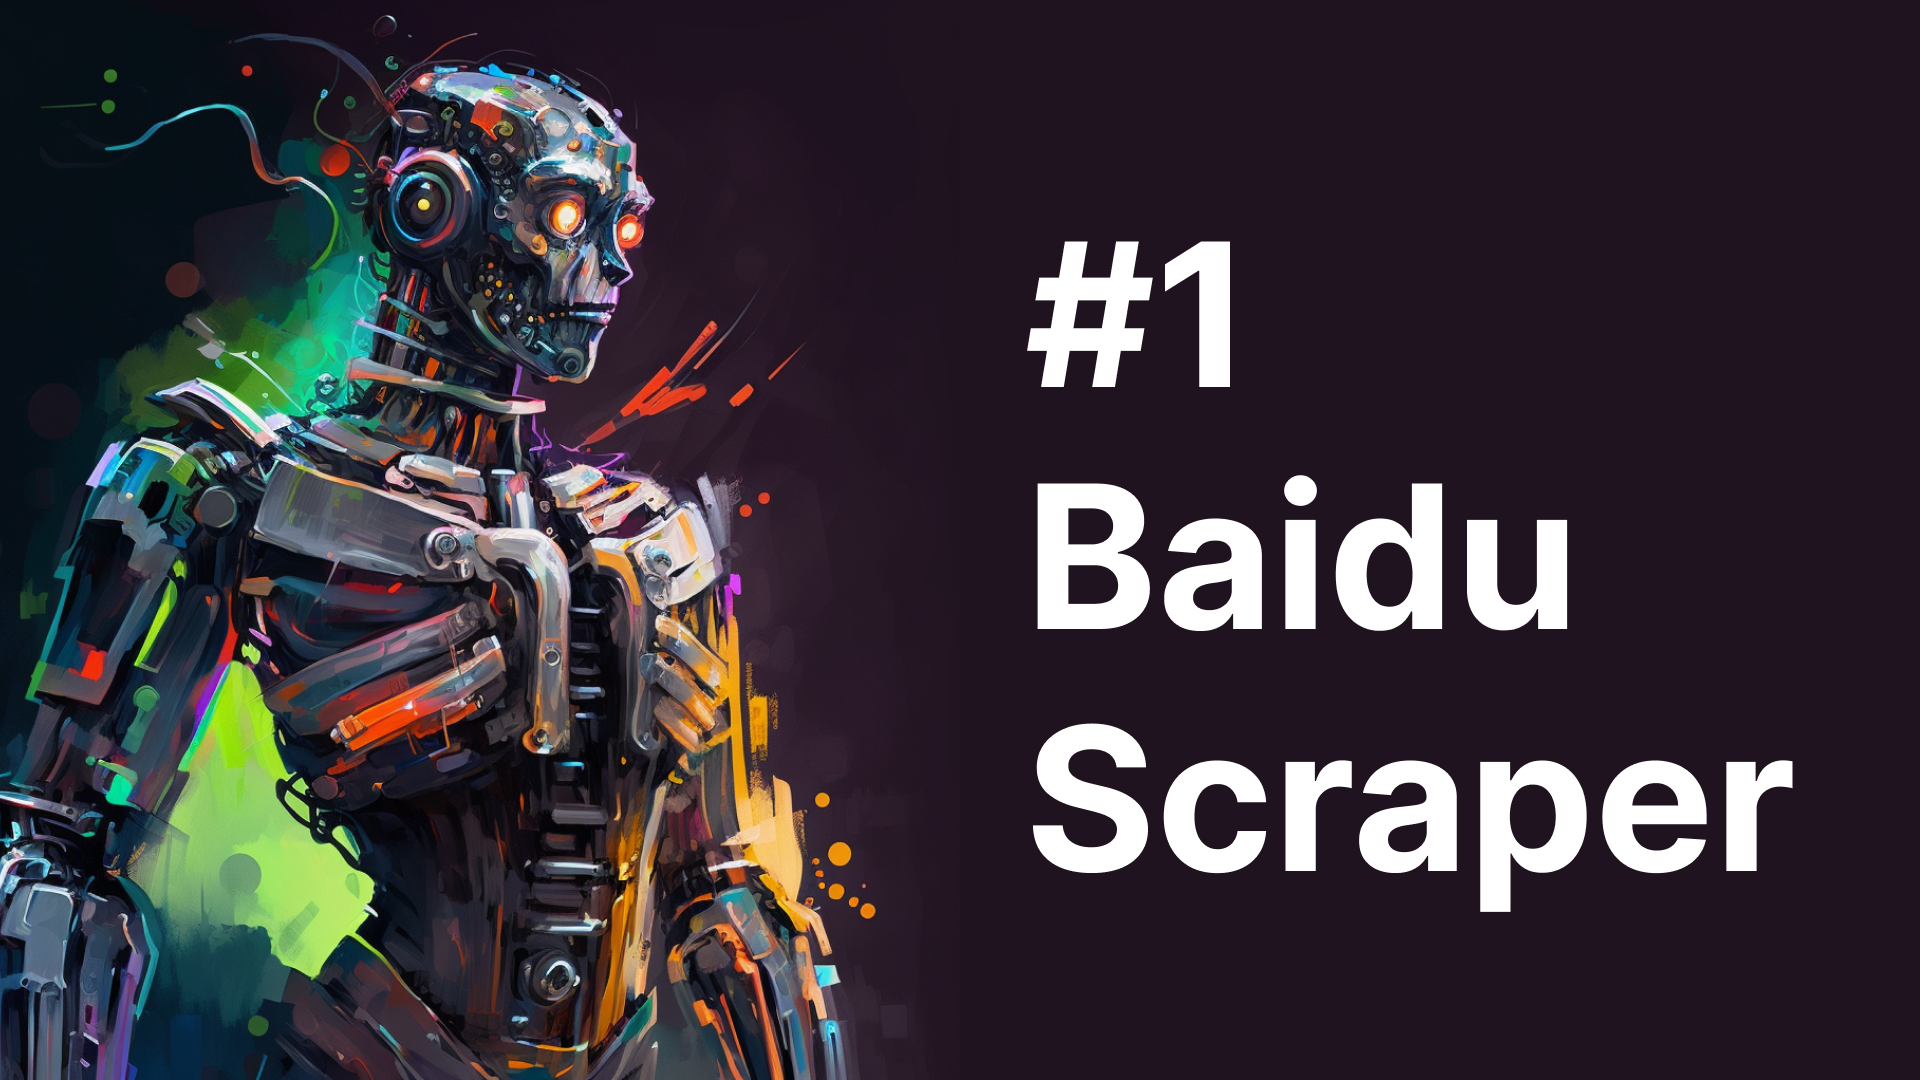 Baidu Scraper Featured Image